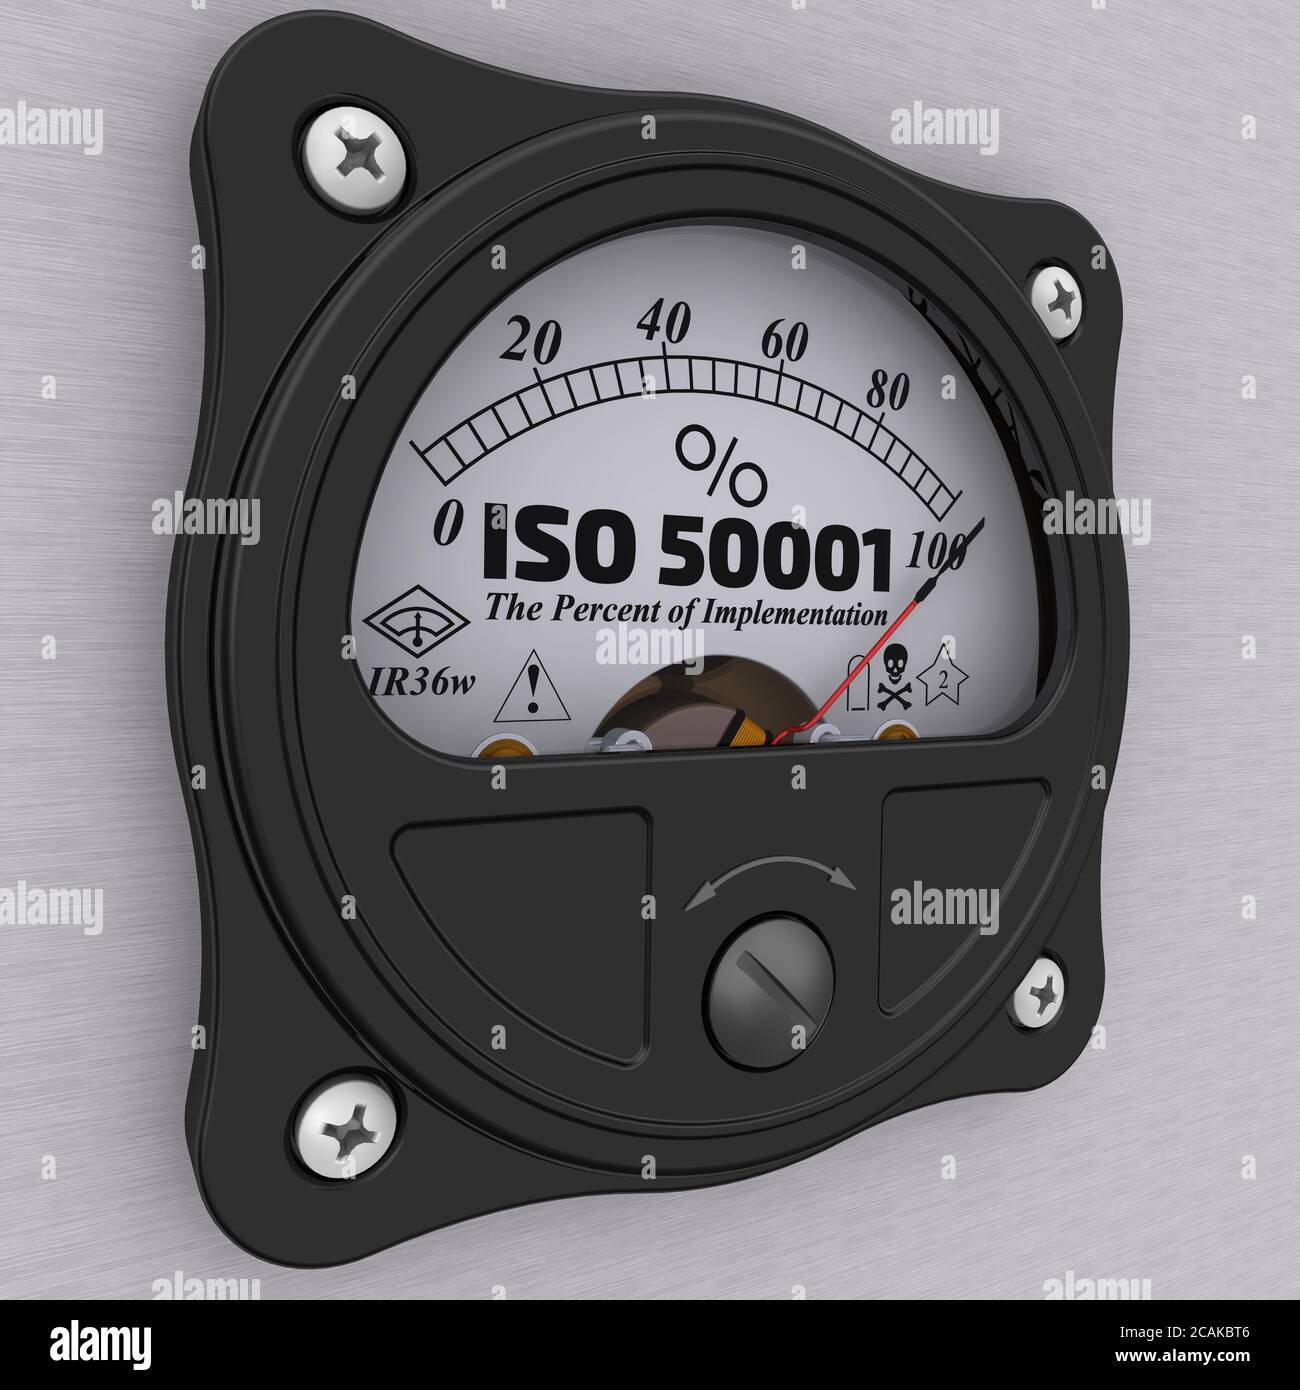 ISO 50001. Pourcentage de mise en œuvre. Indicateur analogique indiquant le niveau de mise en œuvre de la norme ISO 50001. Illustration 3D Banque D'Images